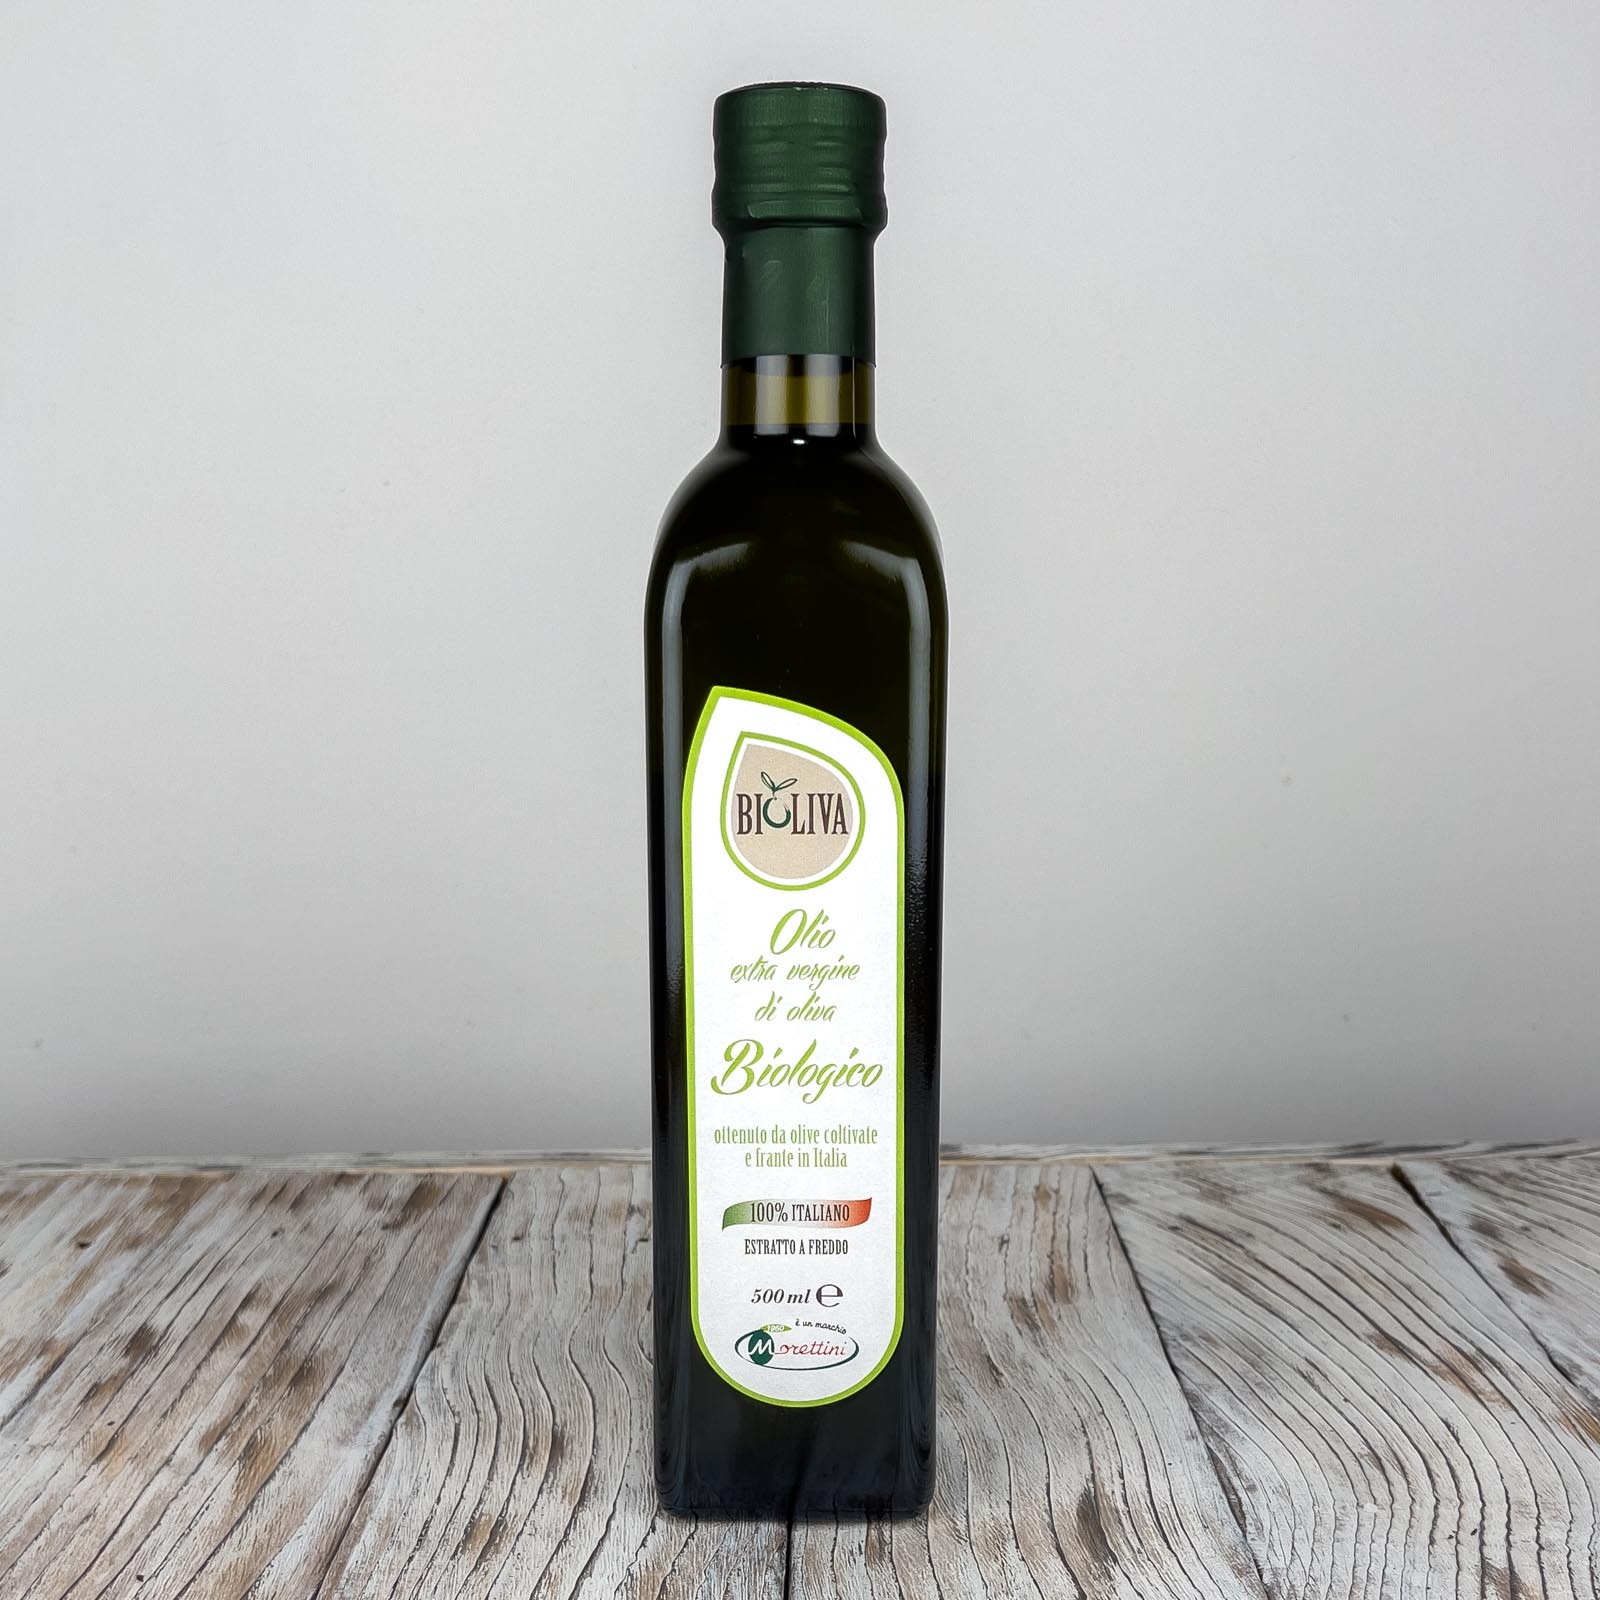 Bioliva, olio extra vergine di oliva biologico 100% italiano di altissima qualità, ottenuto direttamente dalle olive ed unicamente mediante procedimenti meccanici - Anno di produzione 2021/2022.